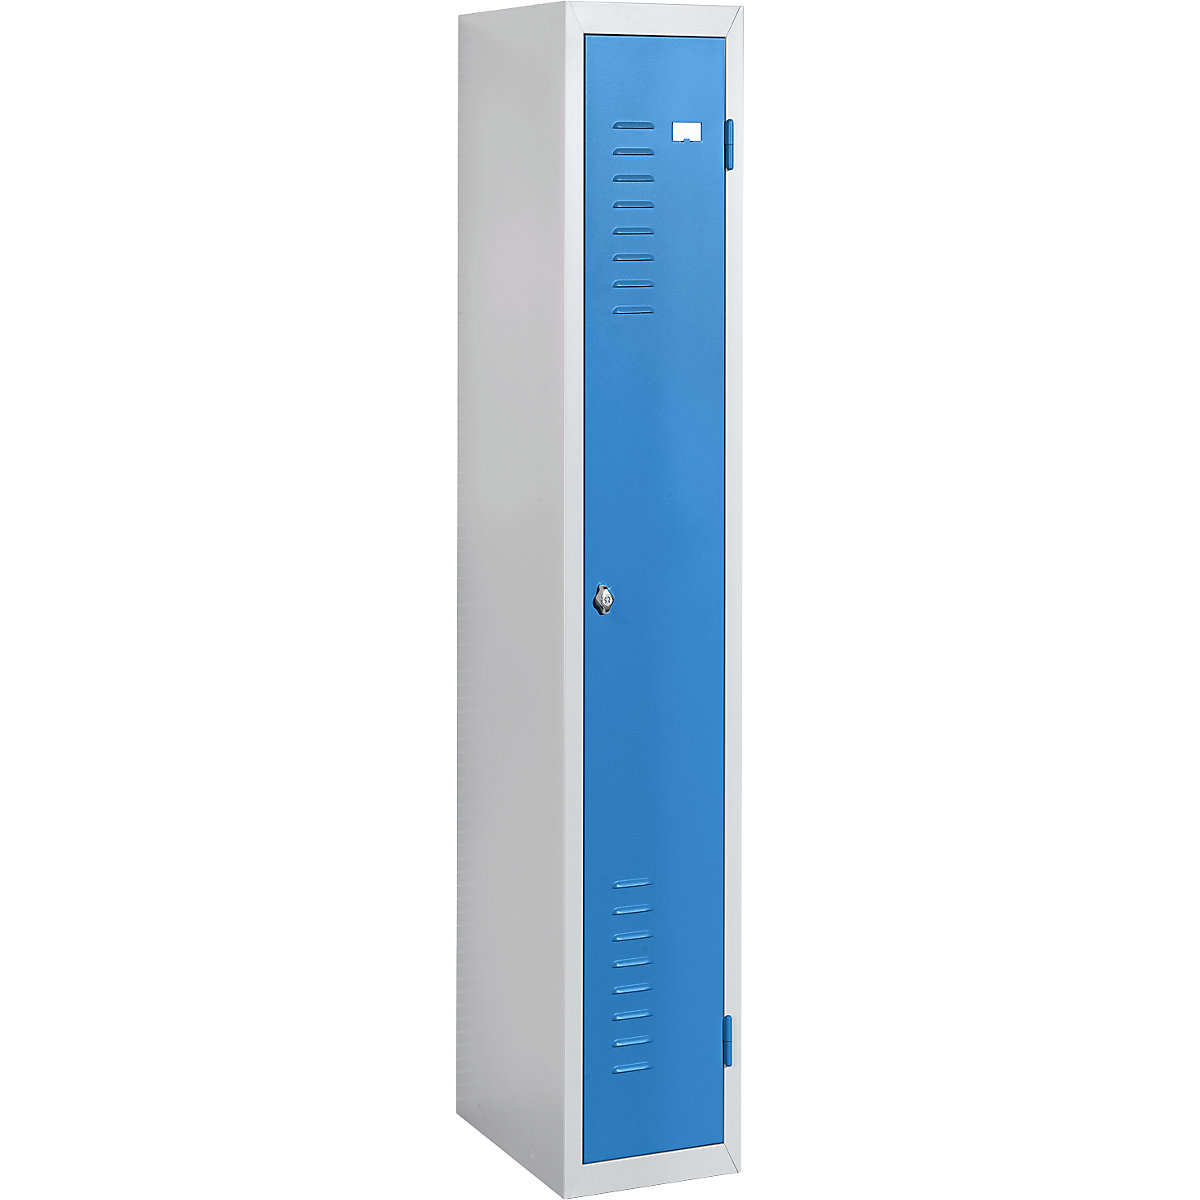 Stahlspind, 1 Abteil, Breite 300 mm, Grundelement, Tür lichtblau